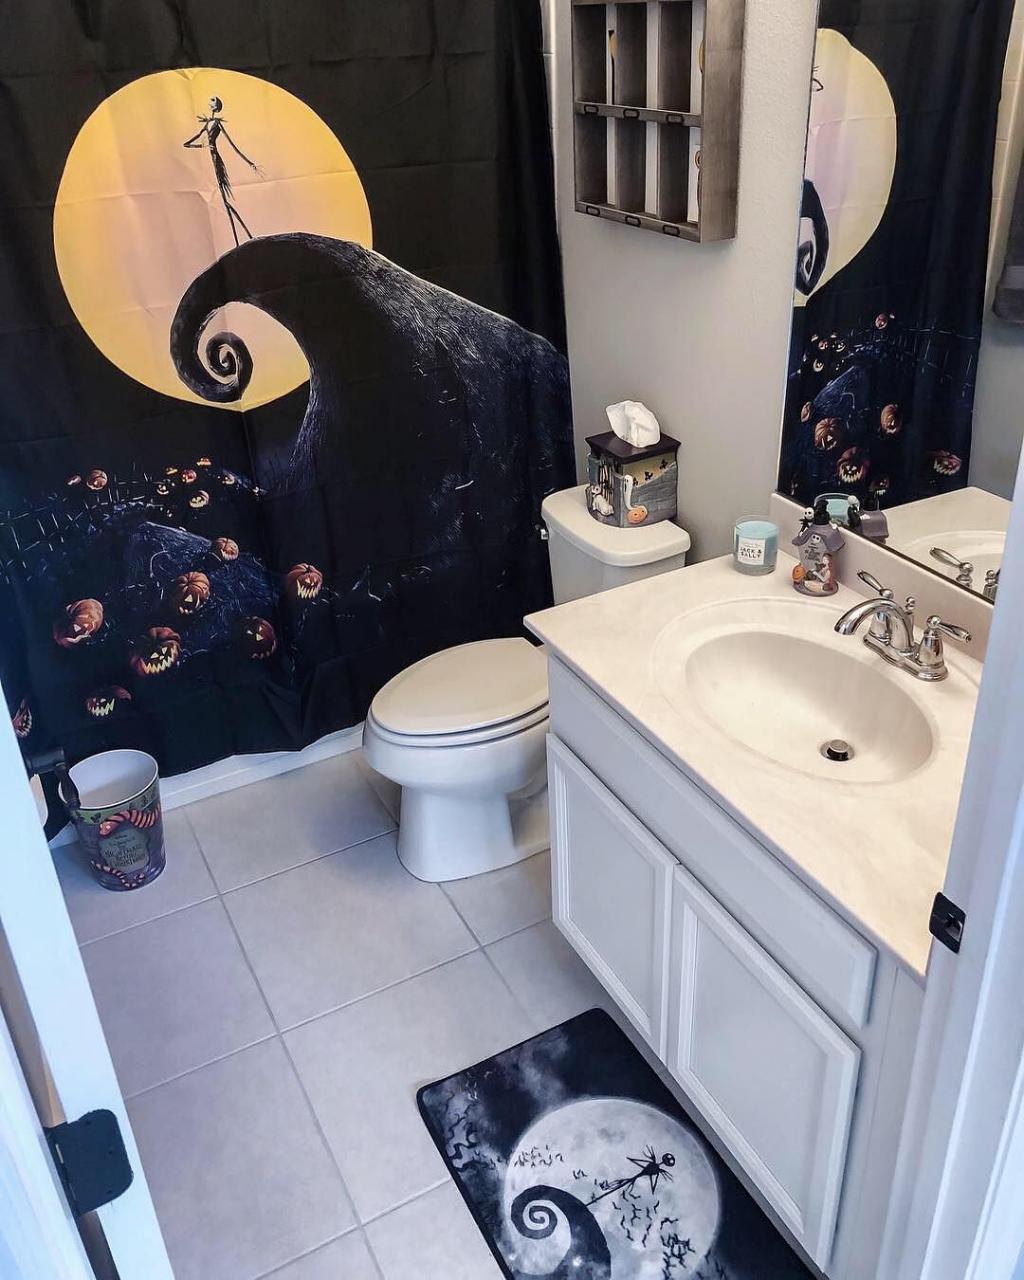 Jack Skellington Bathroom Sets / Disney Tim Burtons The Nightmare